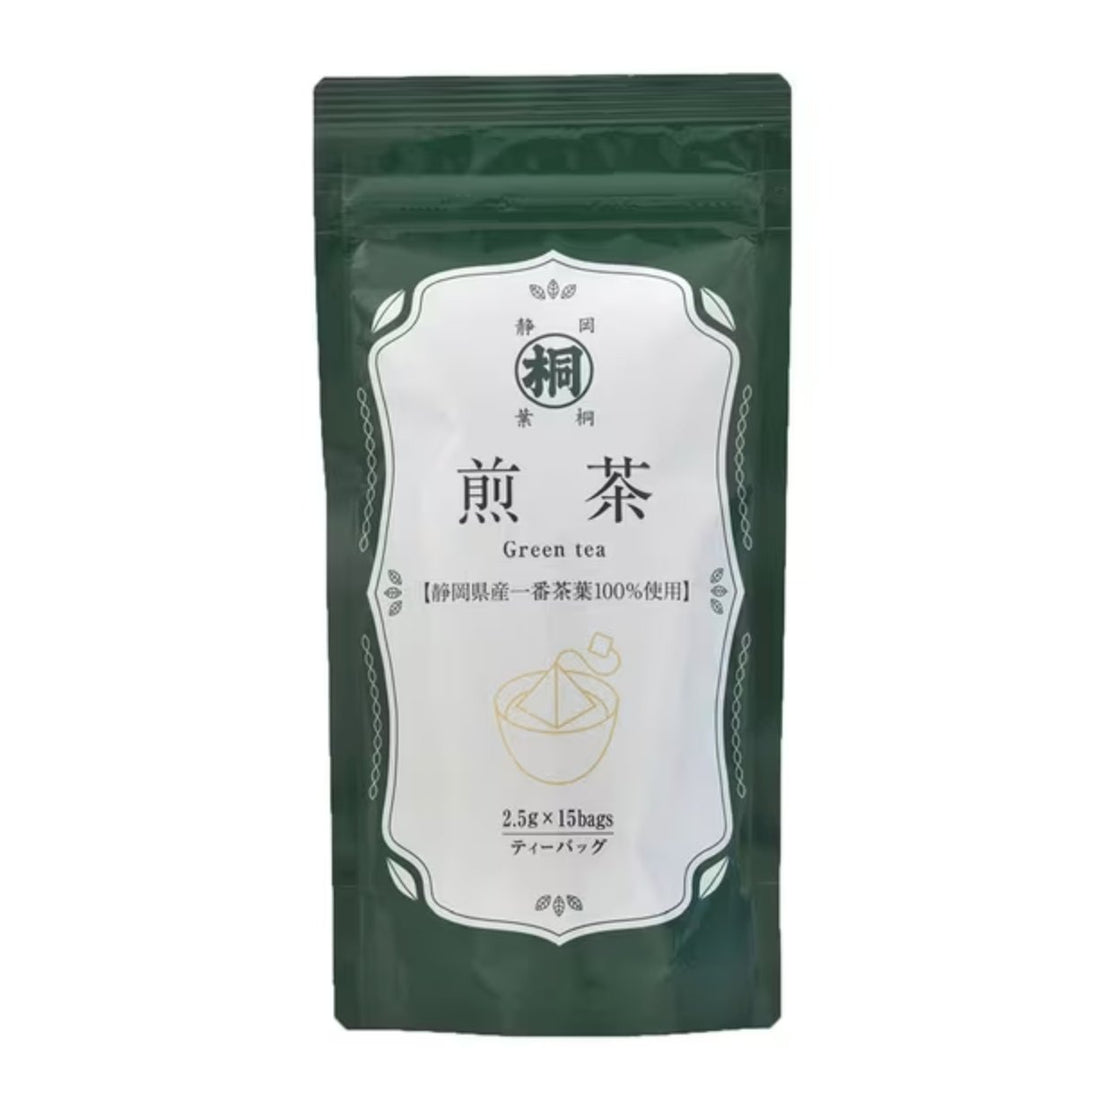 Hagiri Ichibancha Sencha Tea Bags from Shizuoka 2.5g x 15 - NihonMura